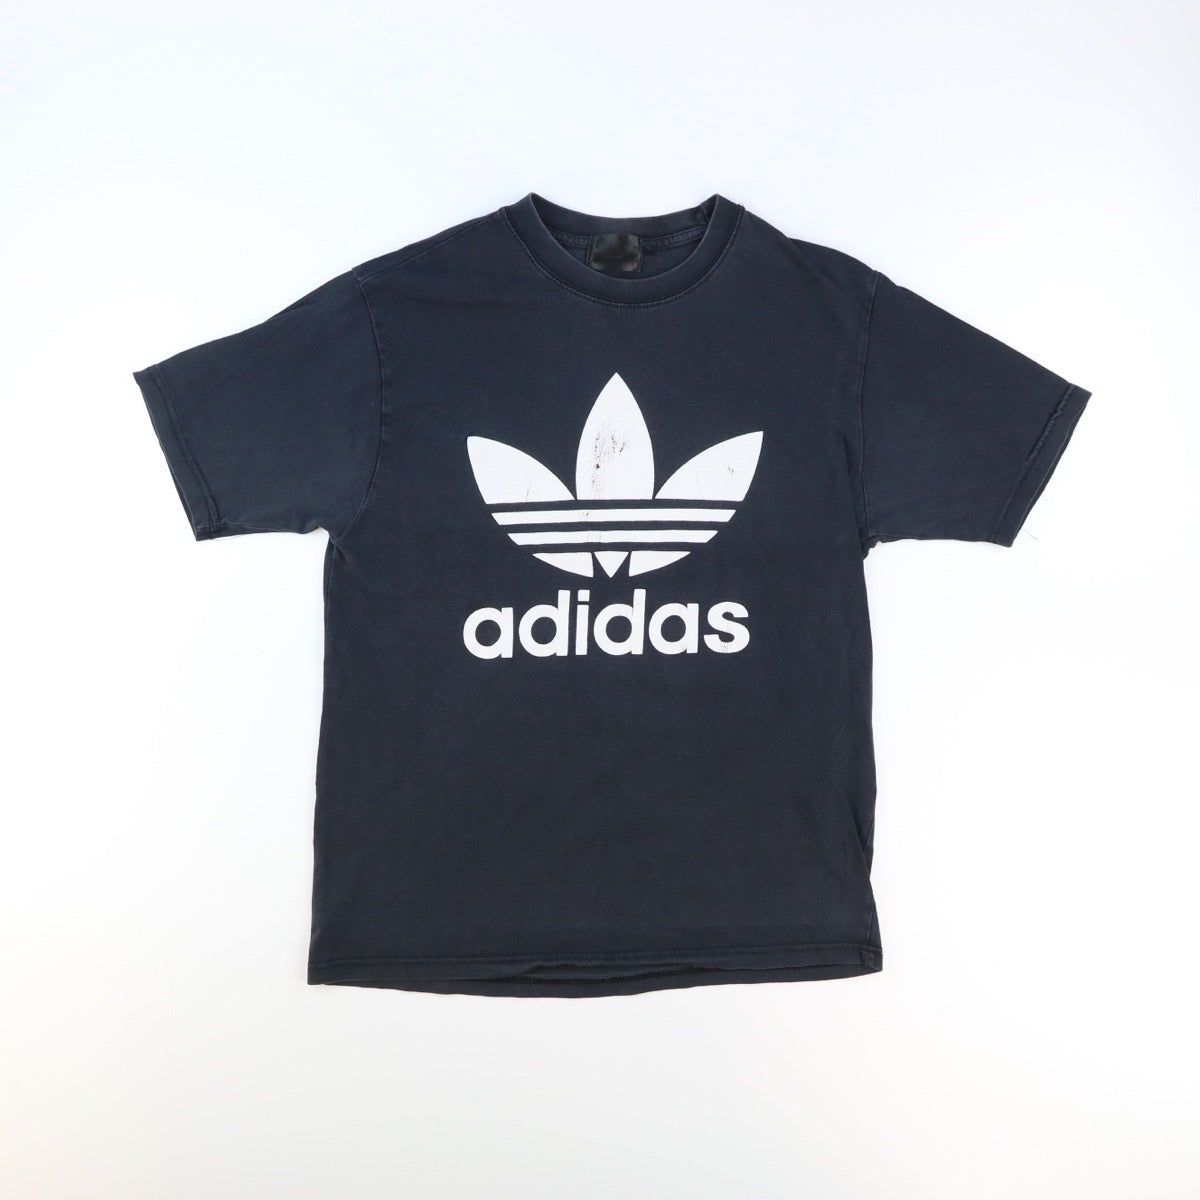 Adidas Tshirt (L)